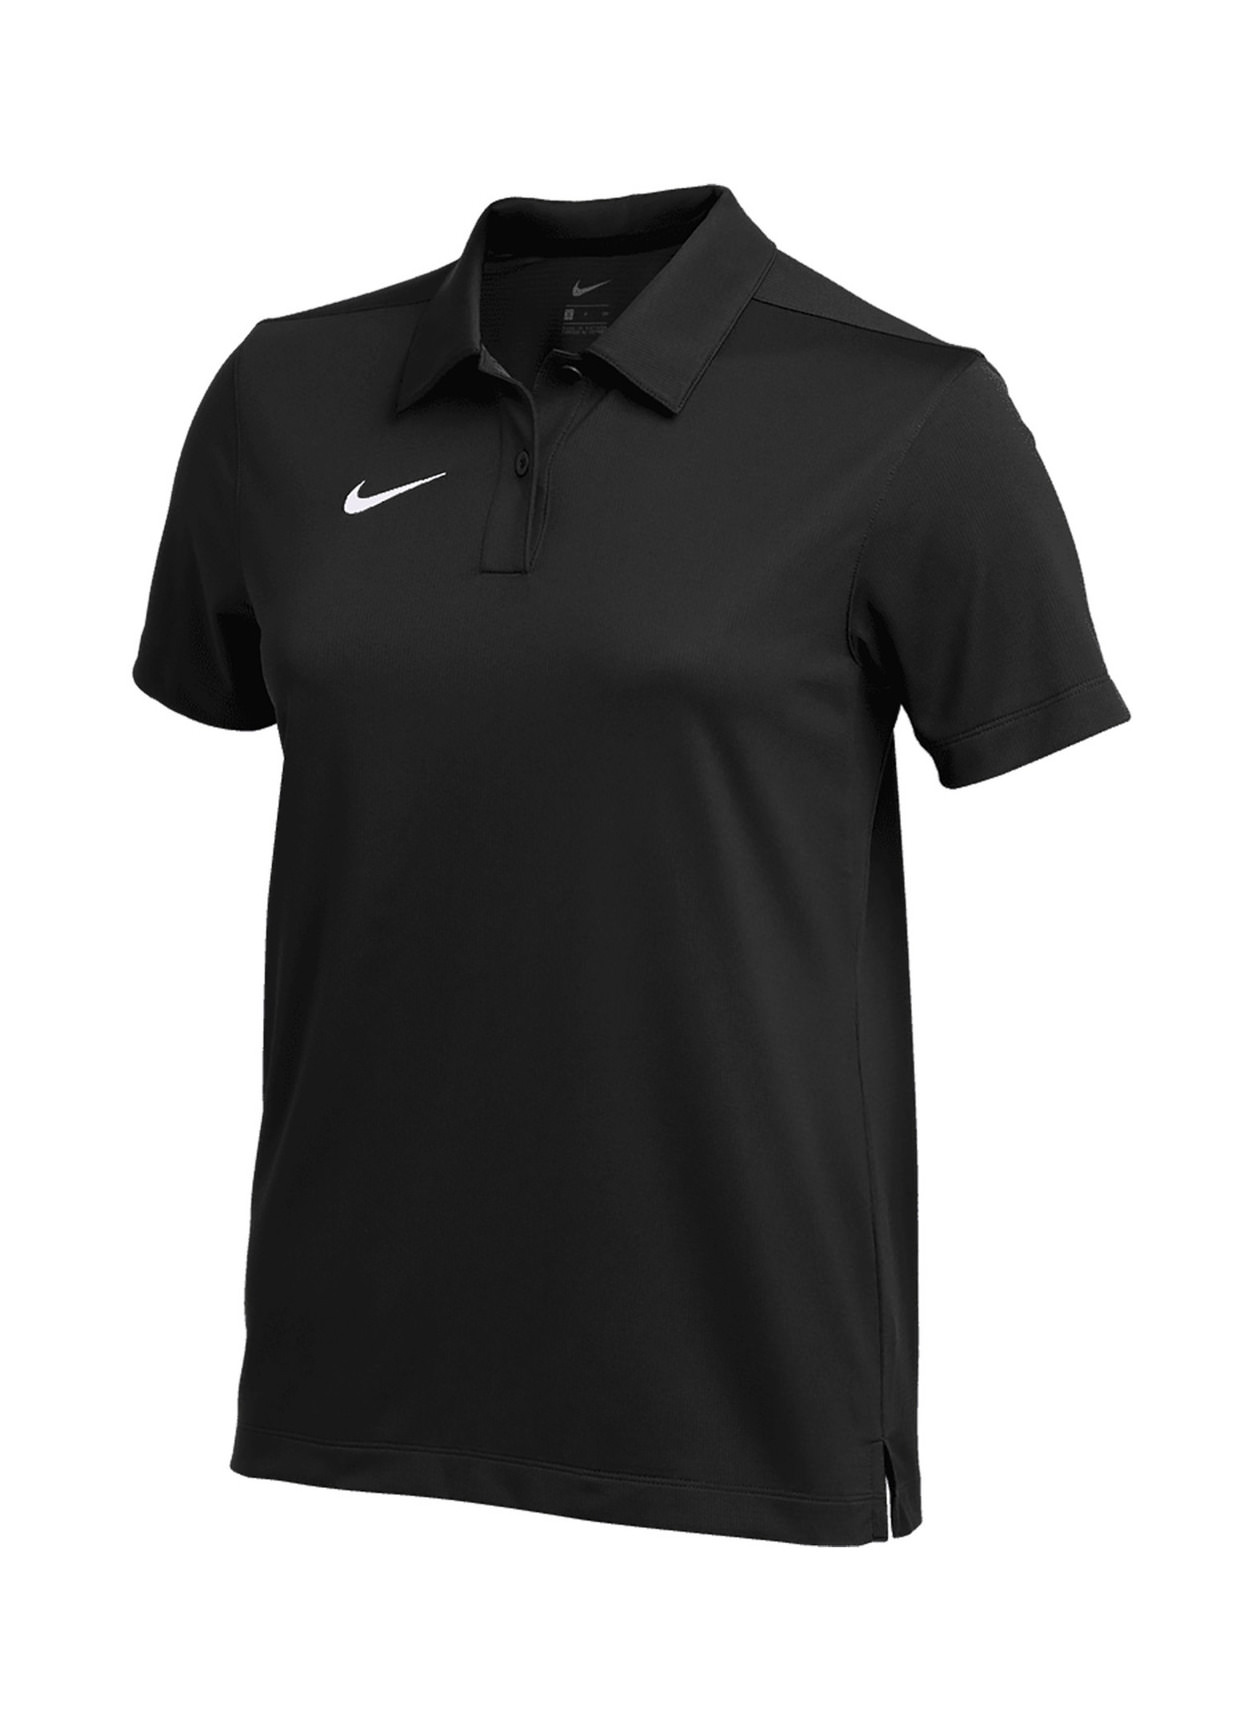 Nike Women's Black Dri-FIT Franchise Polo